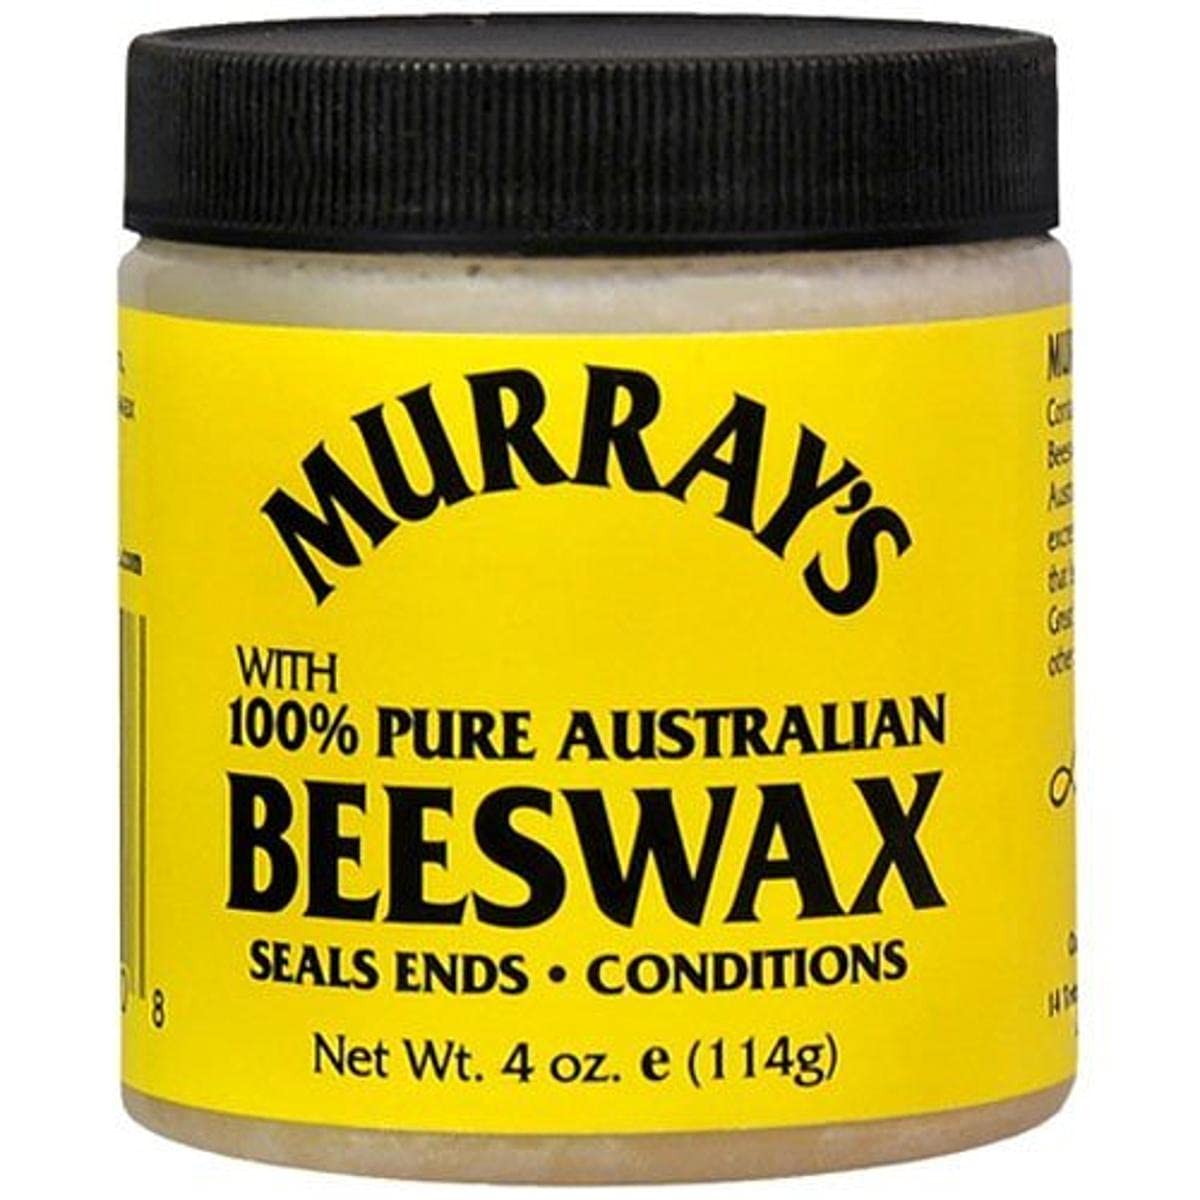 Murray's: Beeswax